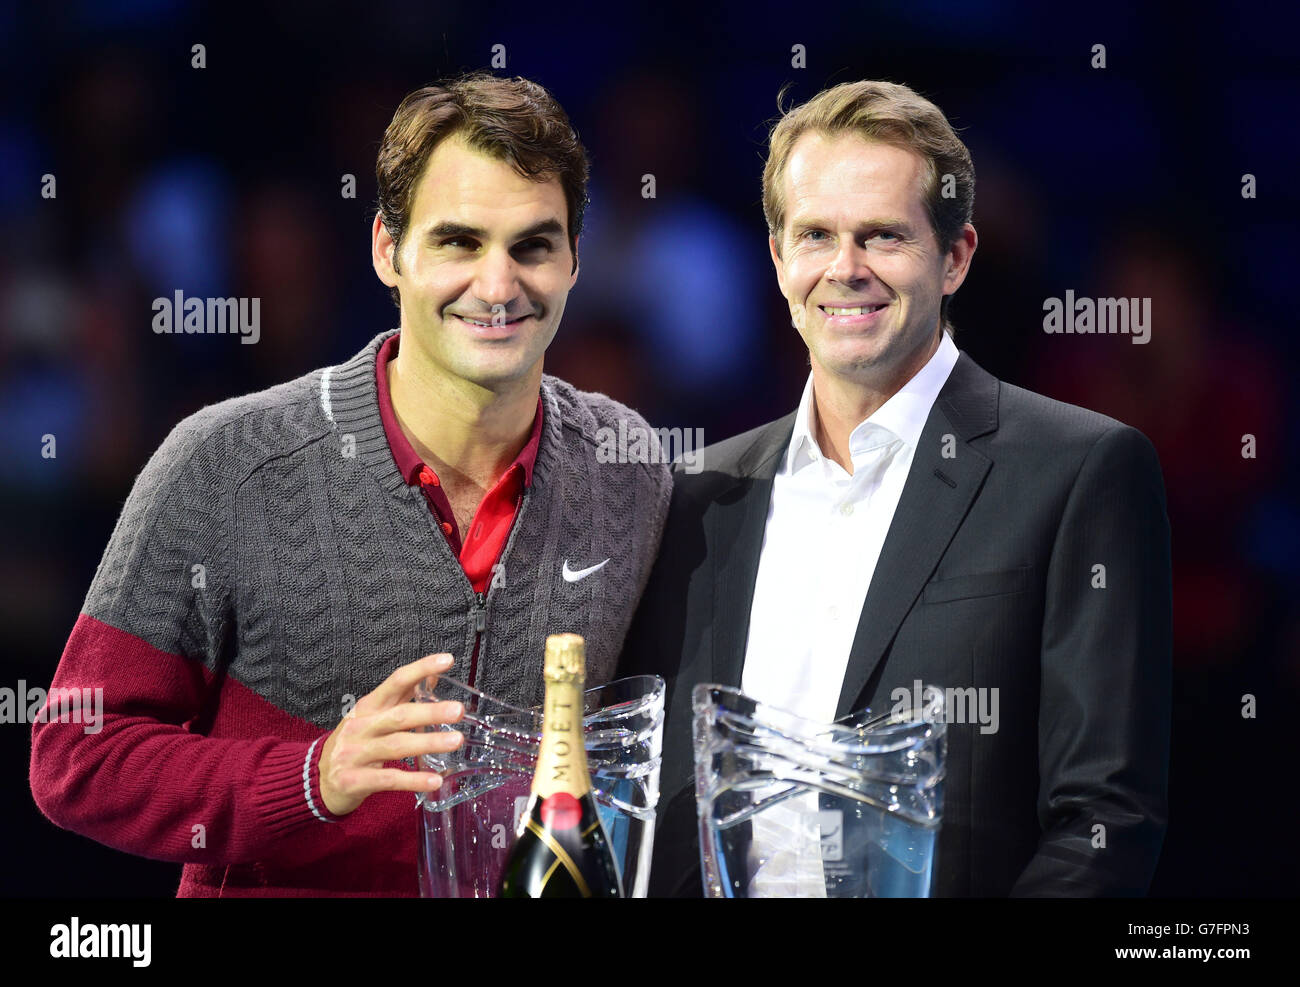 Roger Federer, de Suisse, reçoit deux prix après son match, pour le prix  Stefan Edberg SPORTSWEAR Award et Favourite fans, aux côtés de son  entraîneur Stefan Edberg, après les finales du Barclays